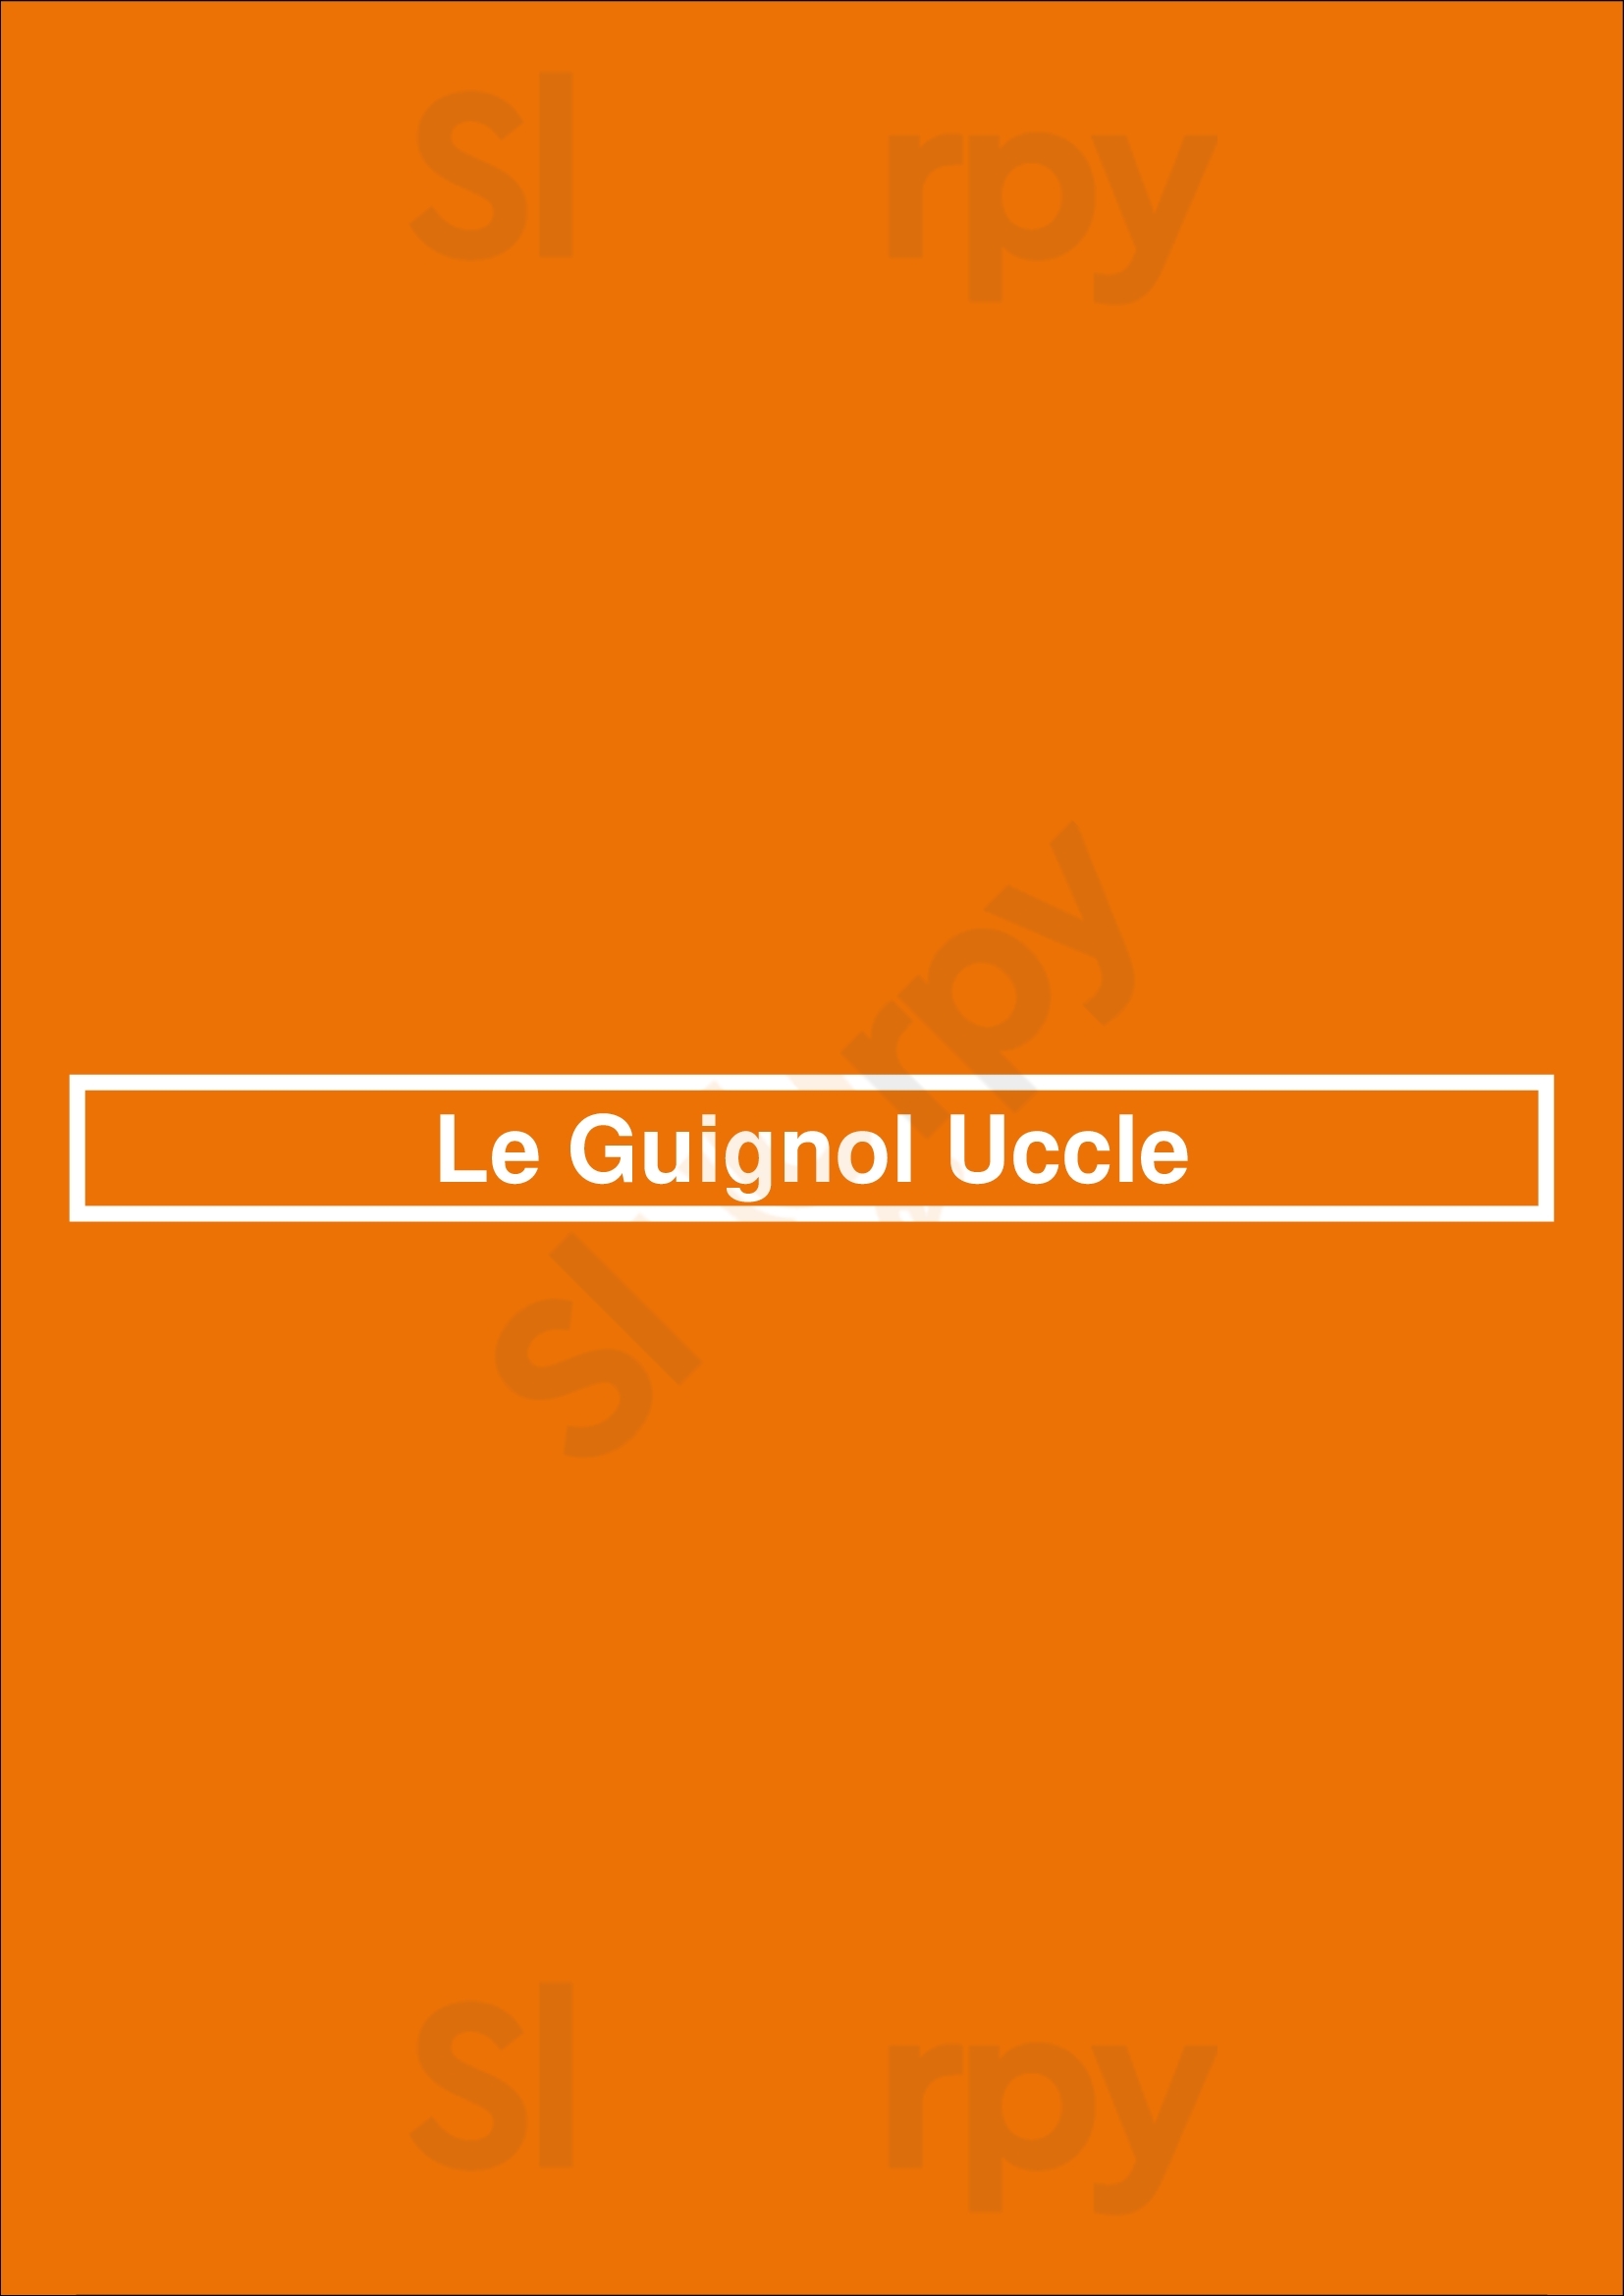 Le Guignol Uccle Uccle Menu - 1